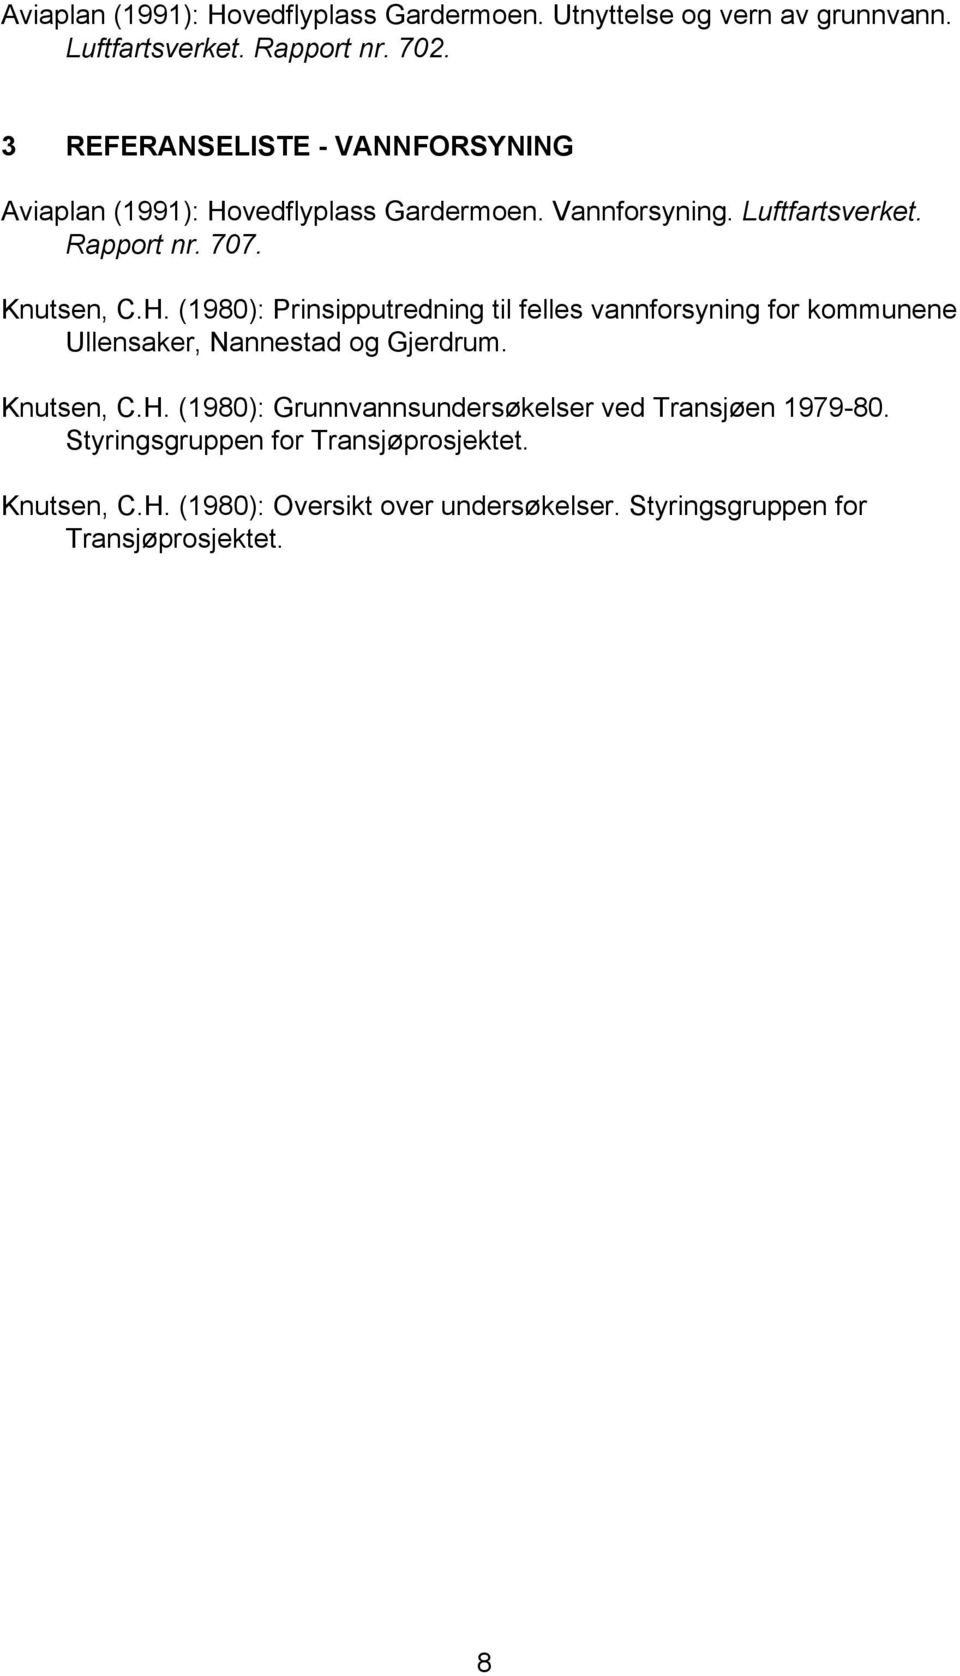 H. (1980): Prinsipputredning til felles vannforsyning for kommunene Ullensaker, Nannestad og Gjerdrum. Knutsen, C.H. (1980): Grunnvannsundersøkelser ved Transjøen 1979-80.